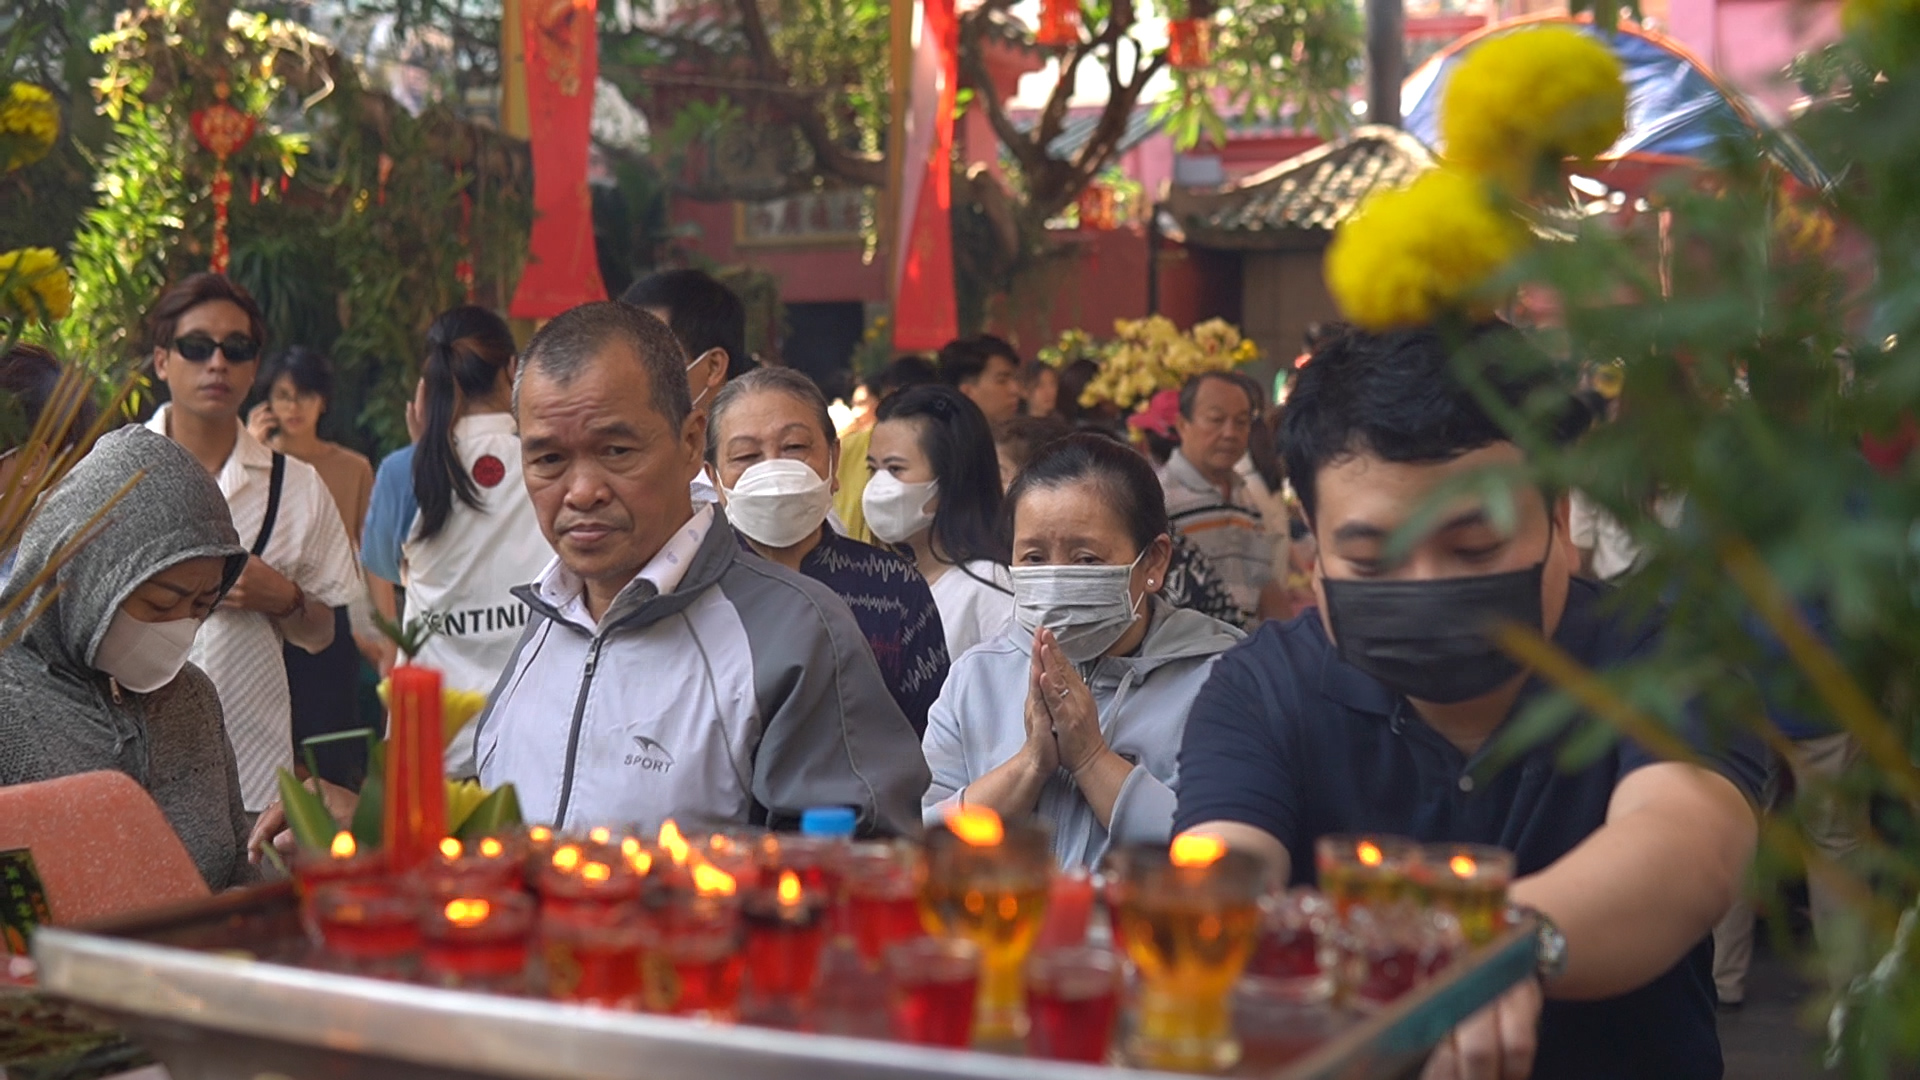 Hàng ngàn người đội nắng đợi đến giữa trưa để vào chùa cầu an ngày vía Ngọc Hoàng- Ảnh 2.